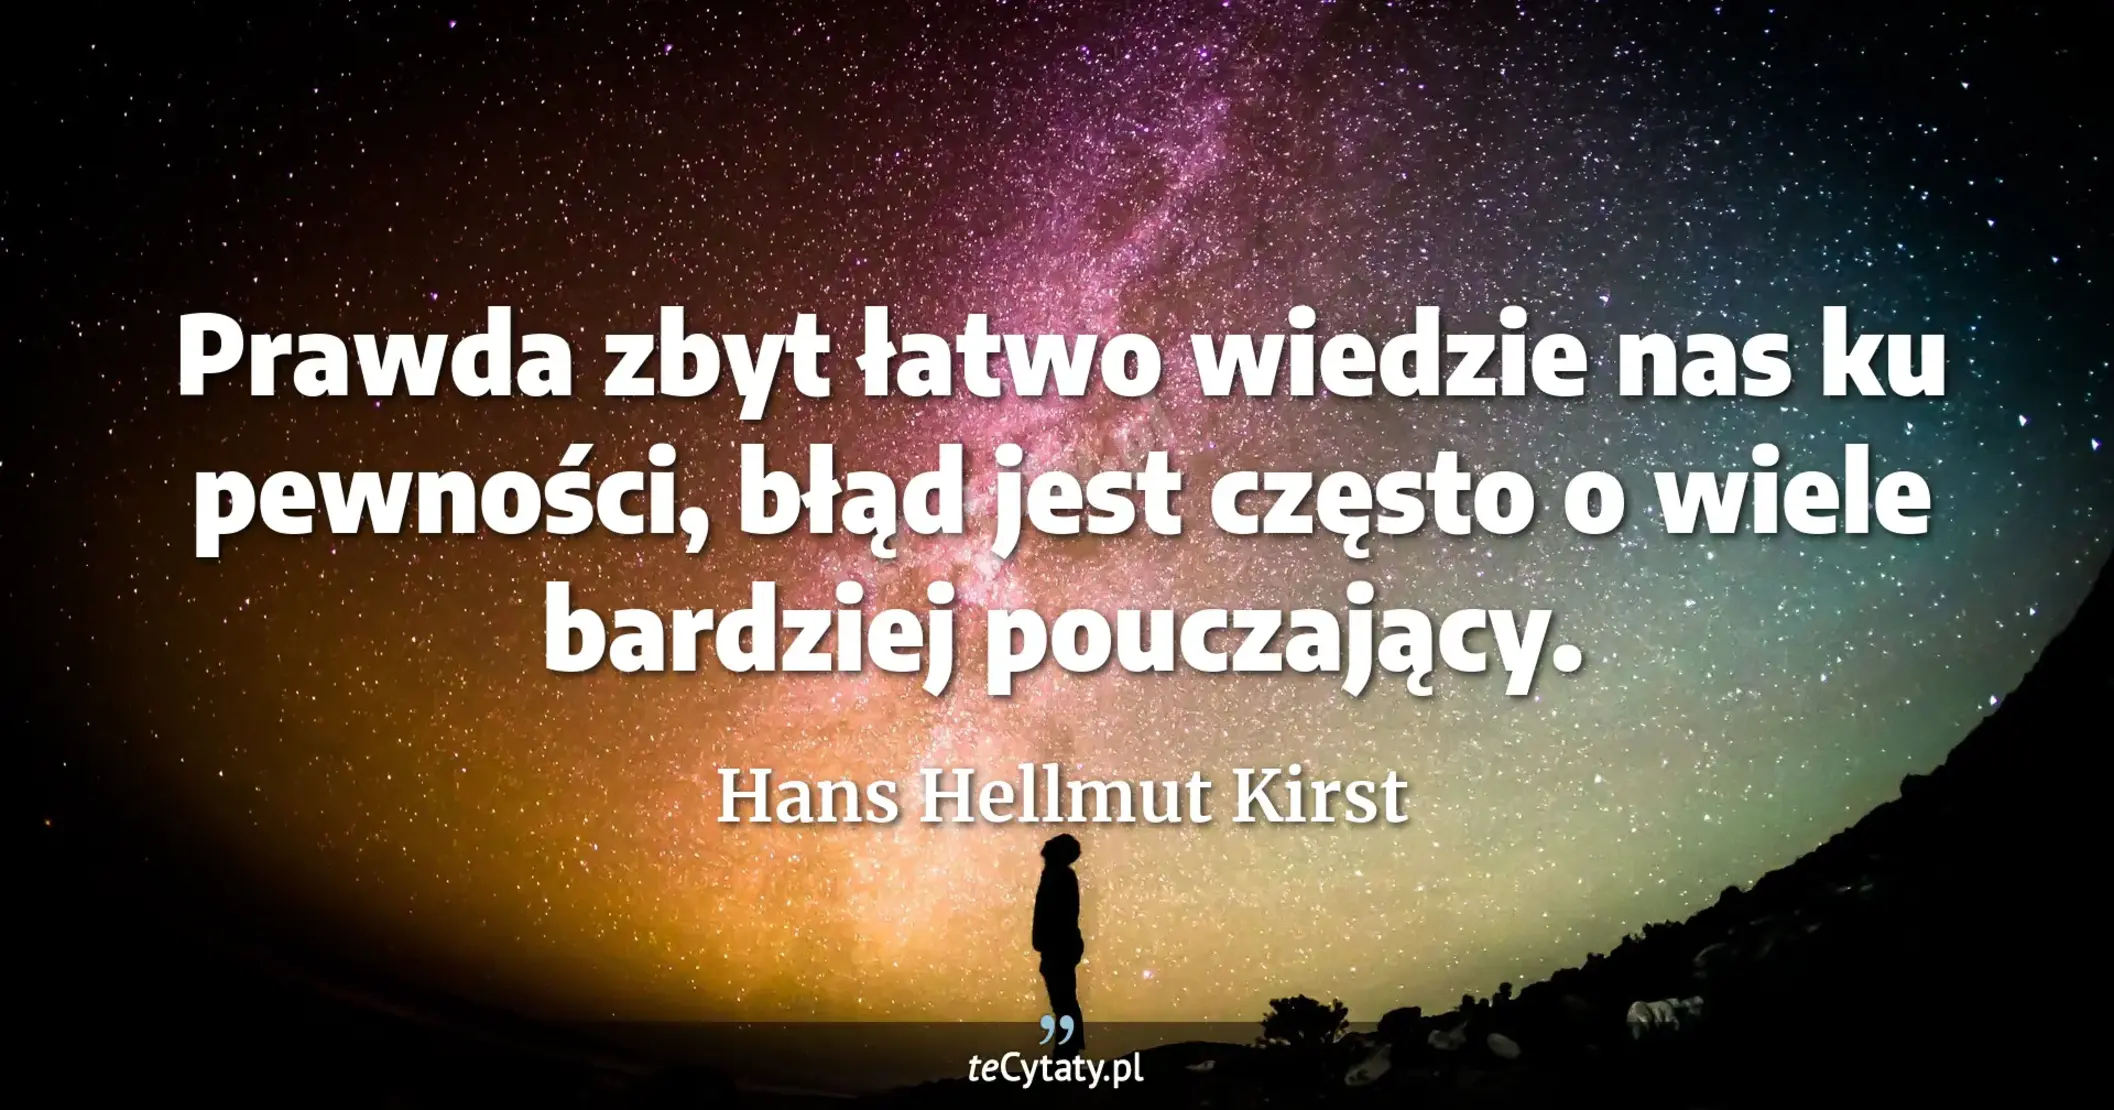 Prawda zbyt łatwo wiedzie nas ku pewności, błąd jest często o wiele bardziej pouczający. - Hans Hellmut Kirst